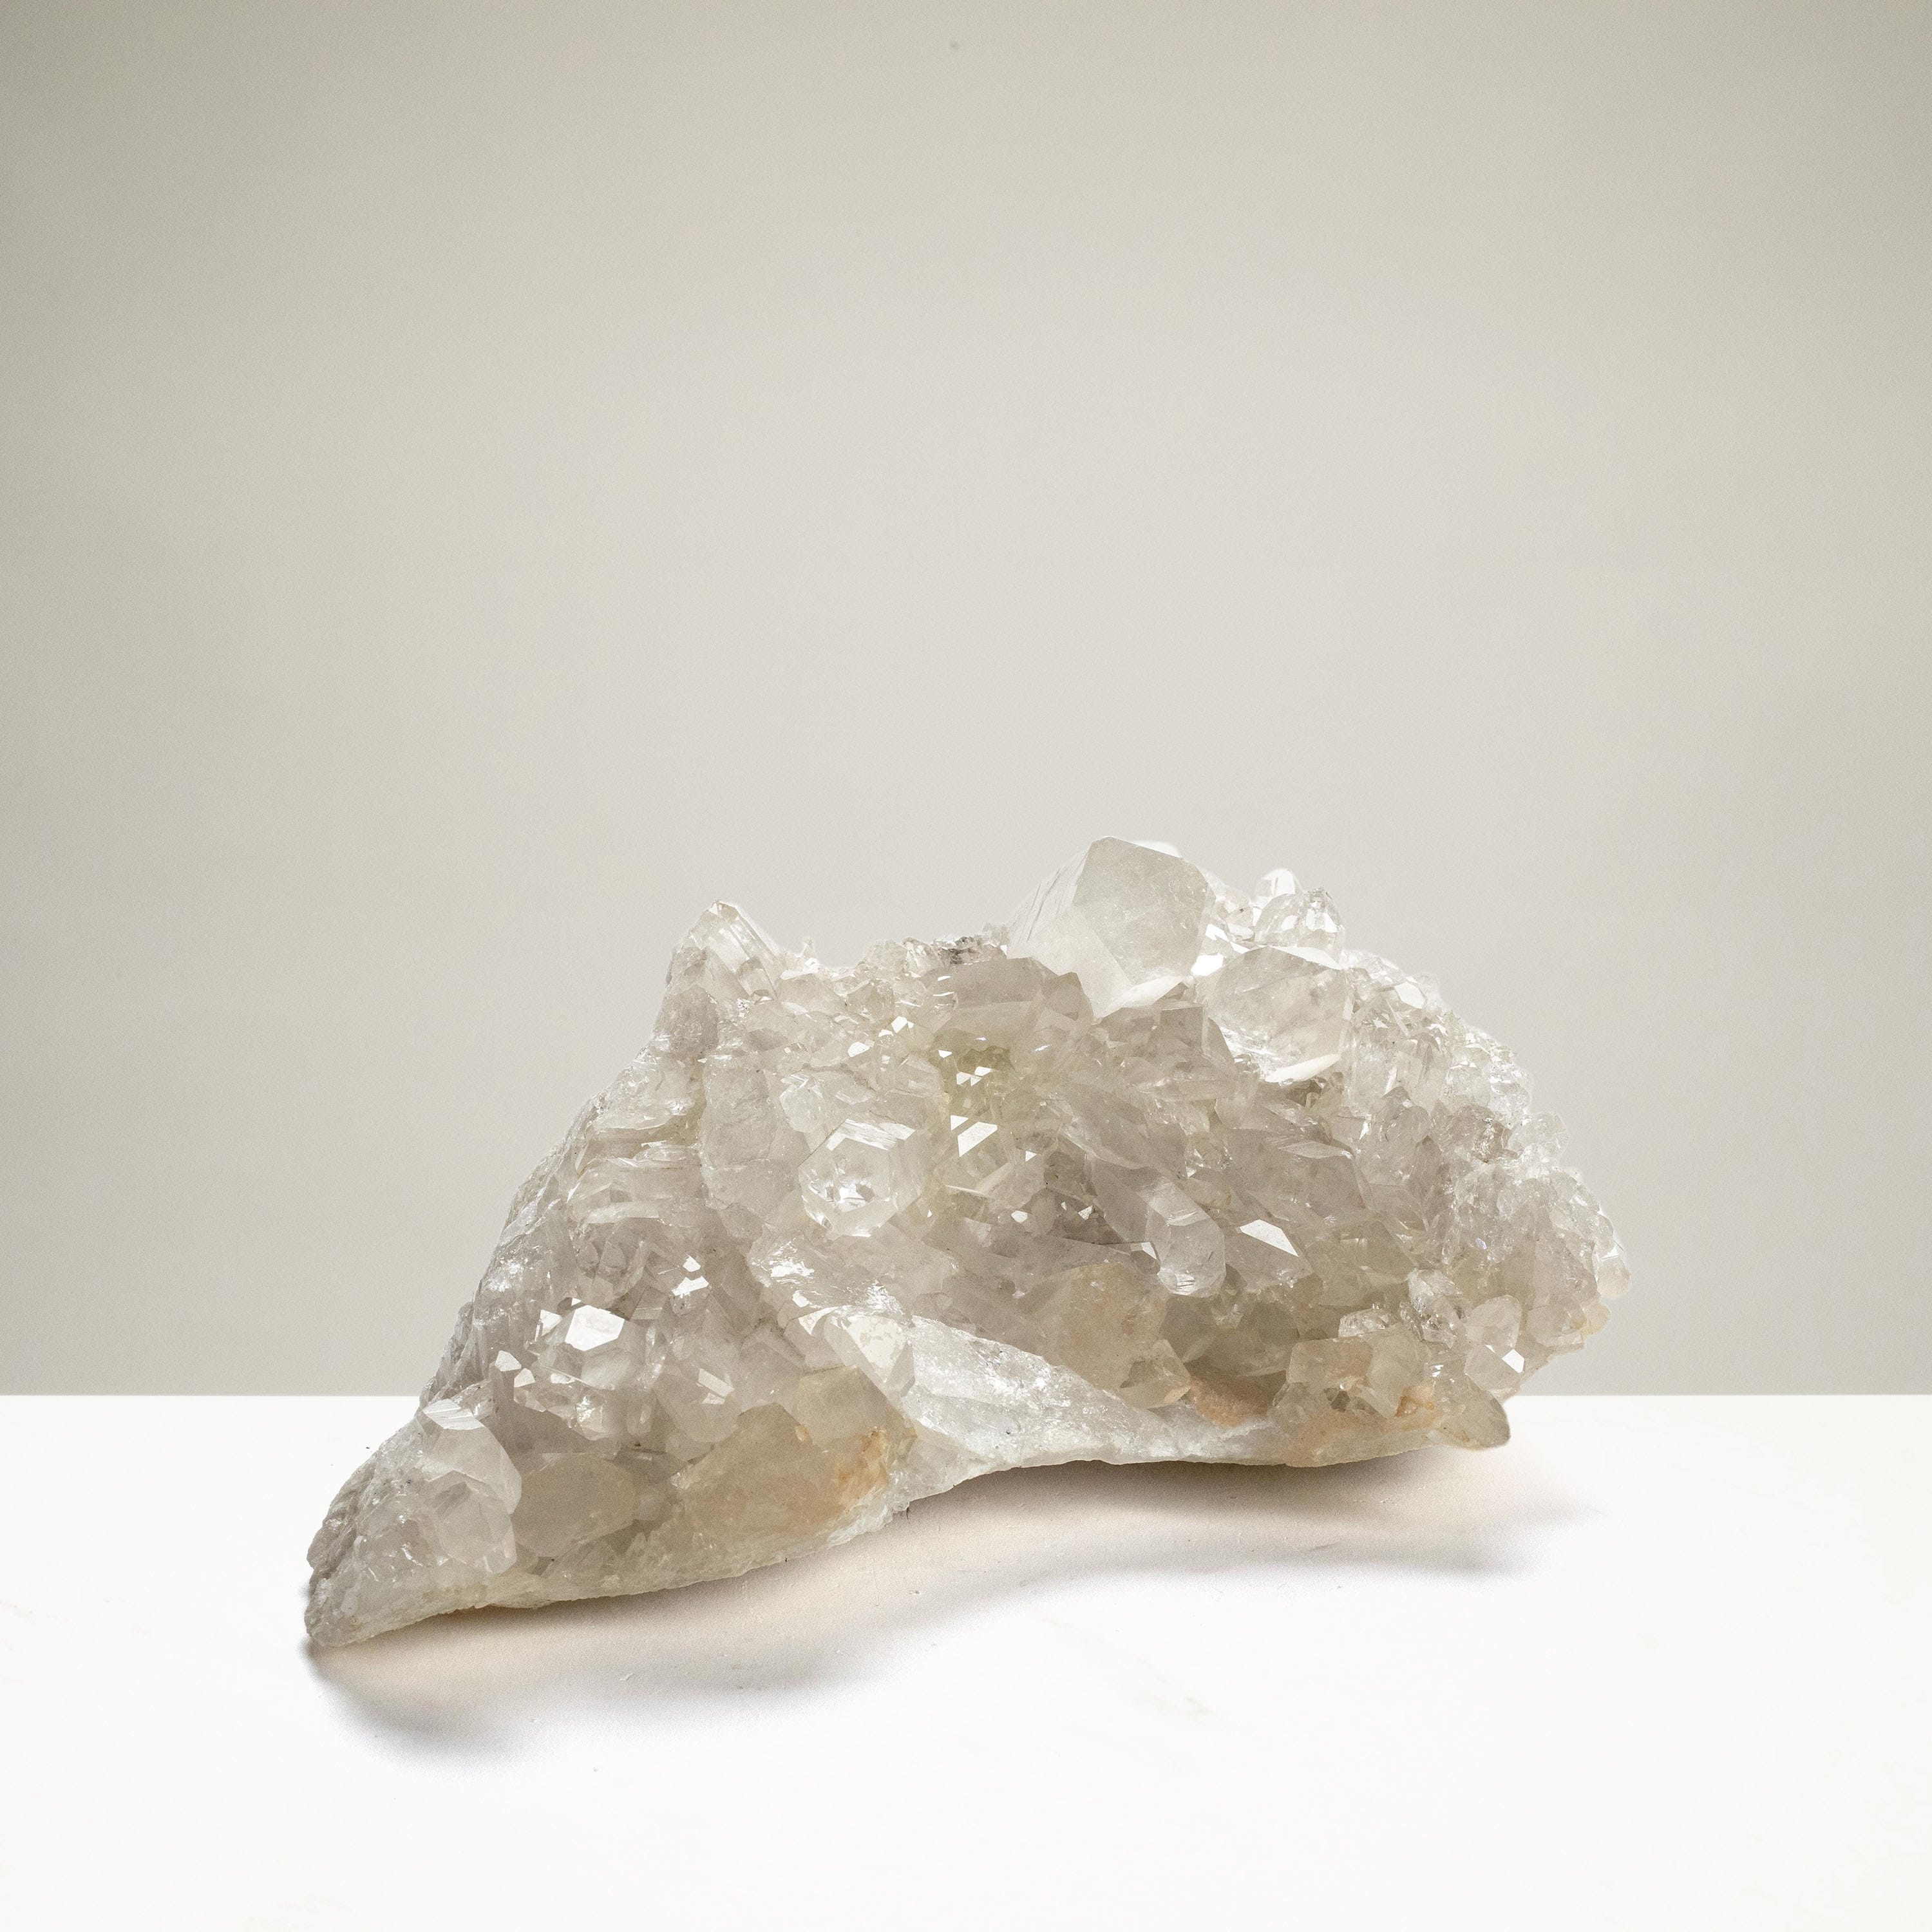 Kalifano Quartz Natural Crystal Quartz Cluster - 13" / 16.1 lbs QC6000.002